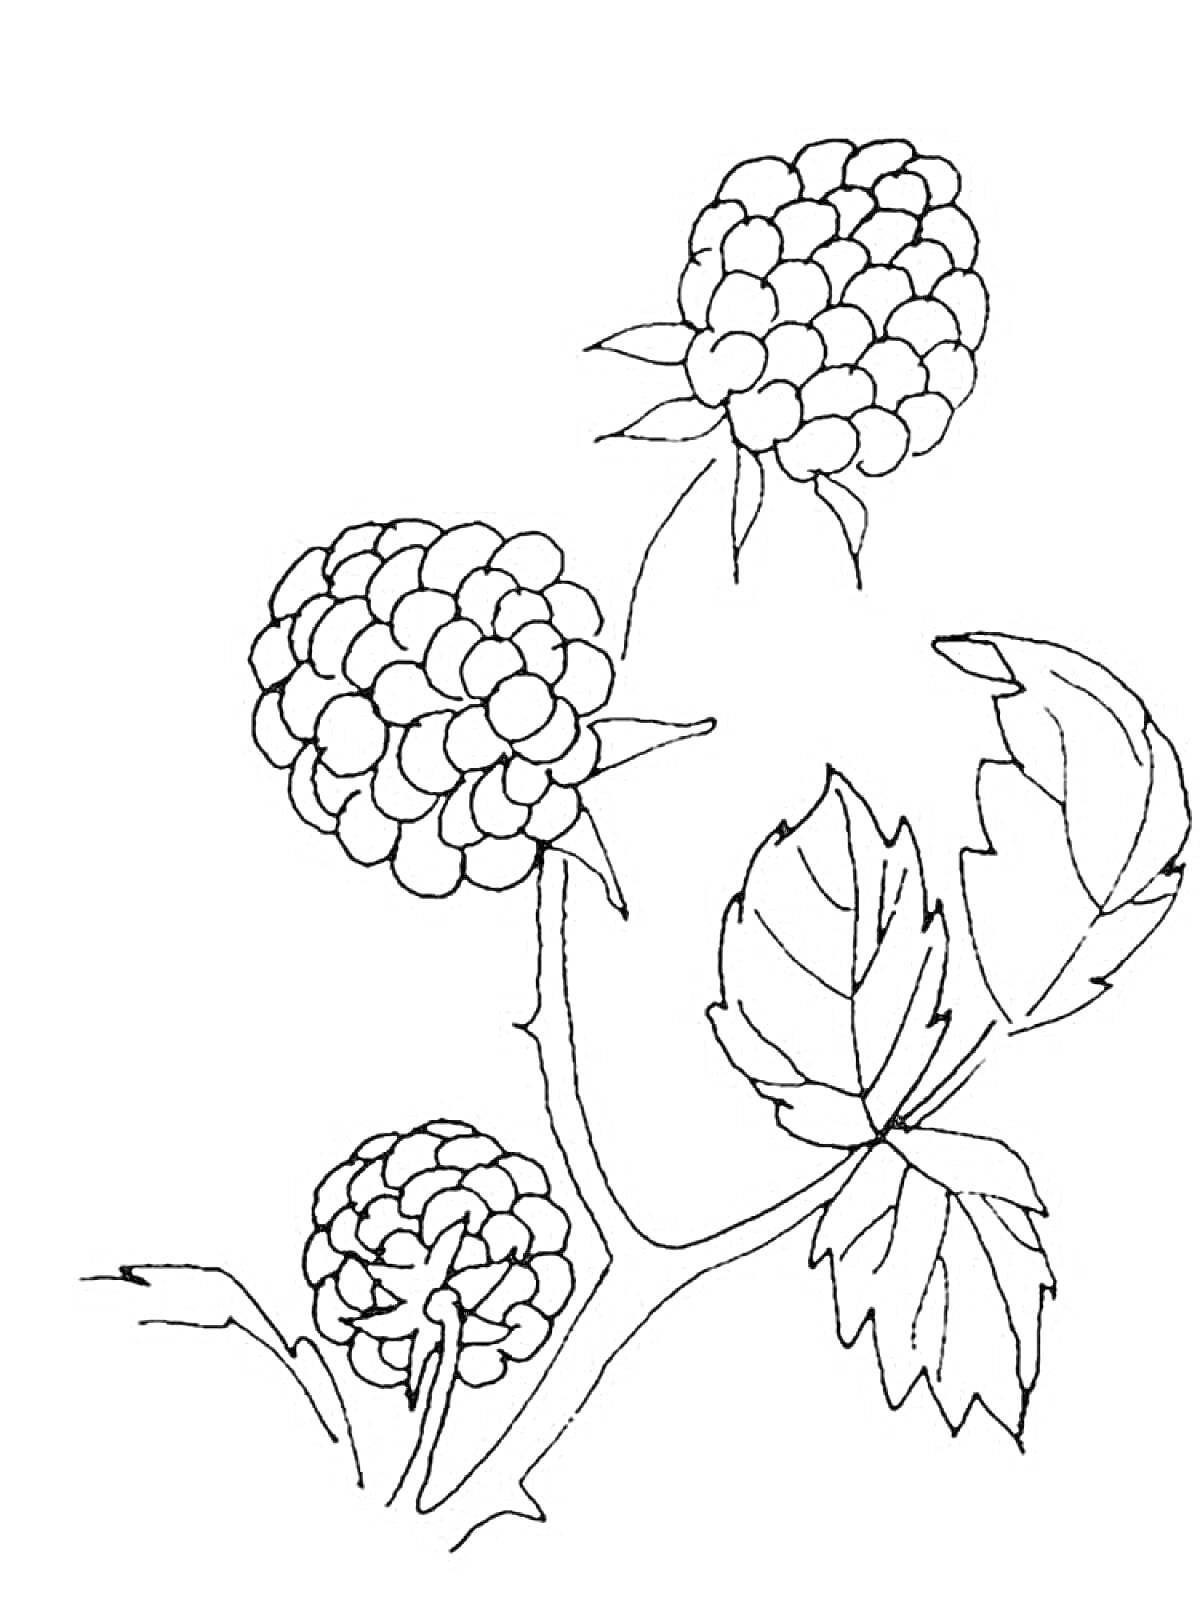 Ветка ежевики с тремя ягодами и листьями